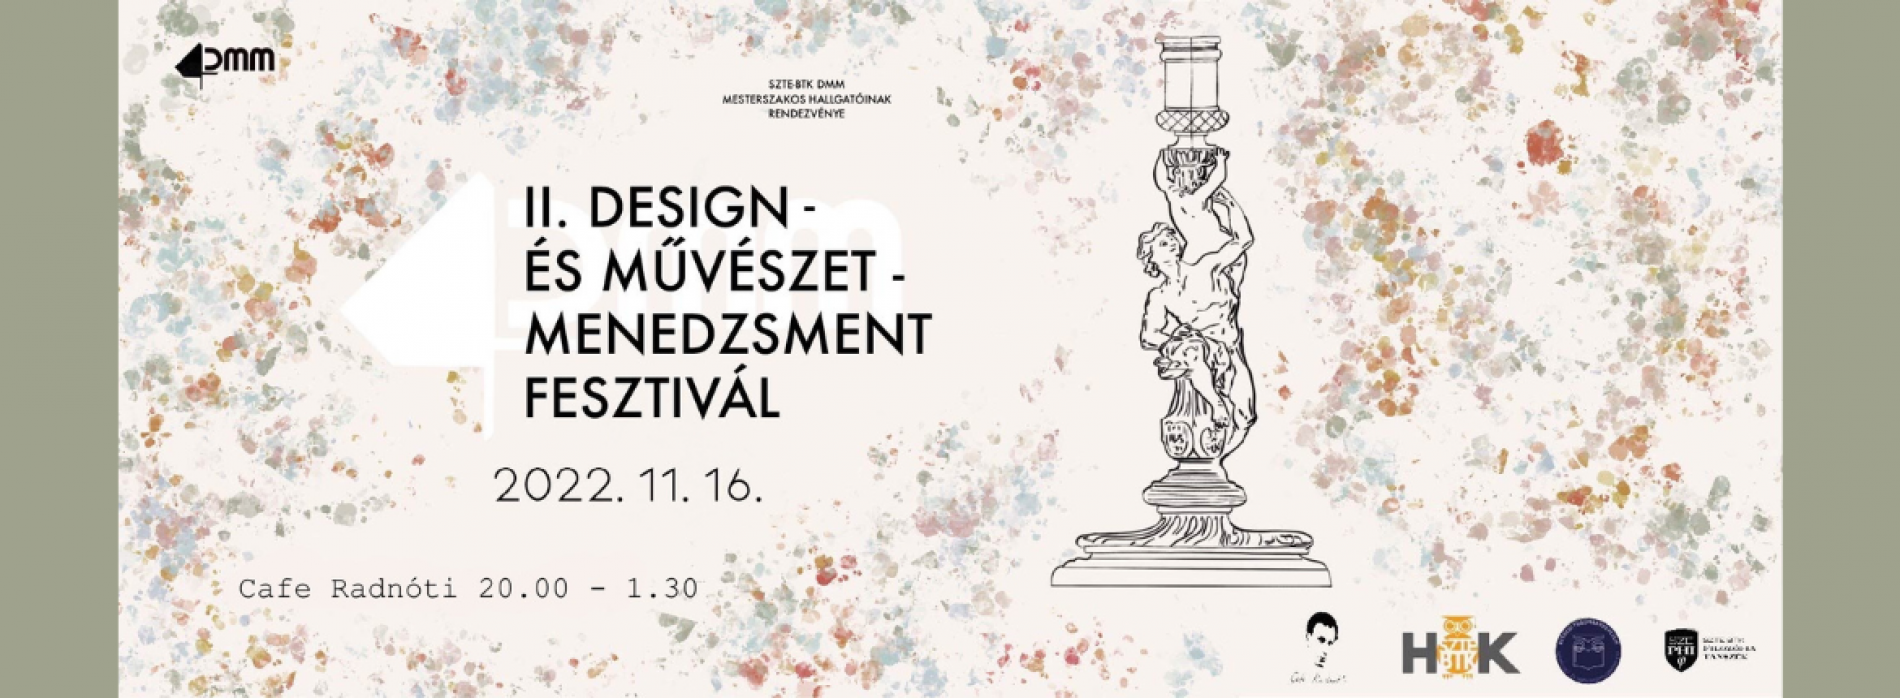 Design-es_Muveszetmenedzsment_Fesztival